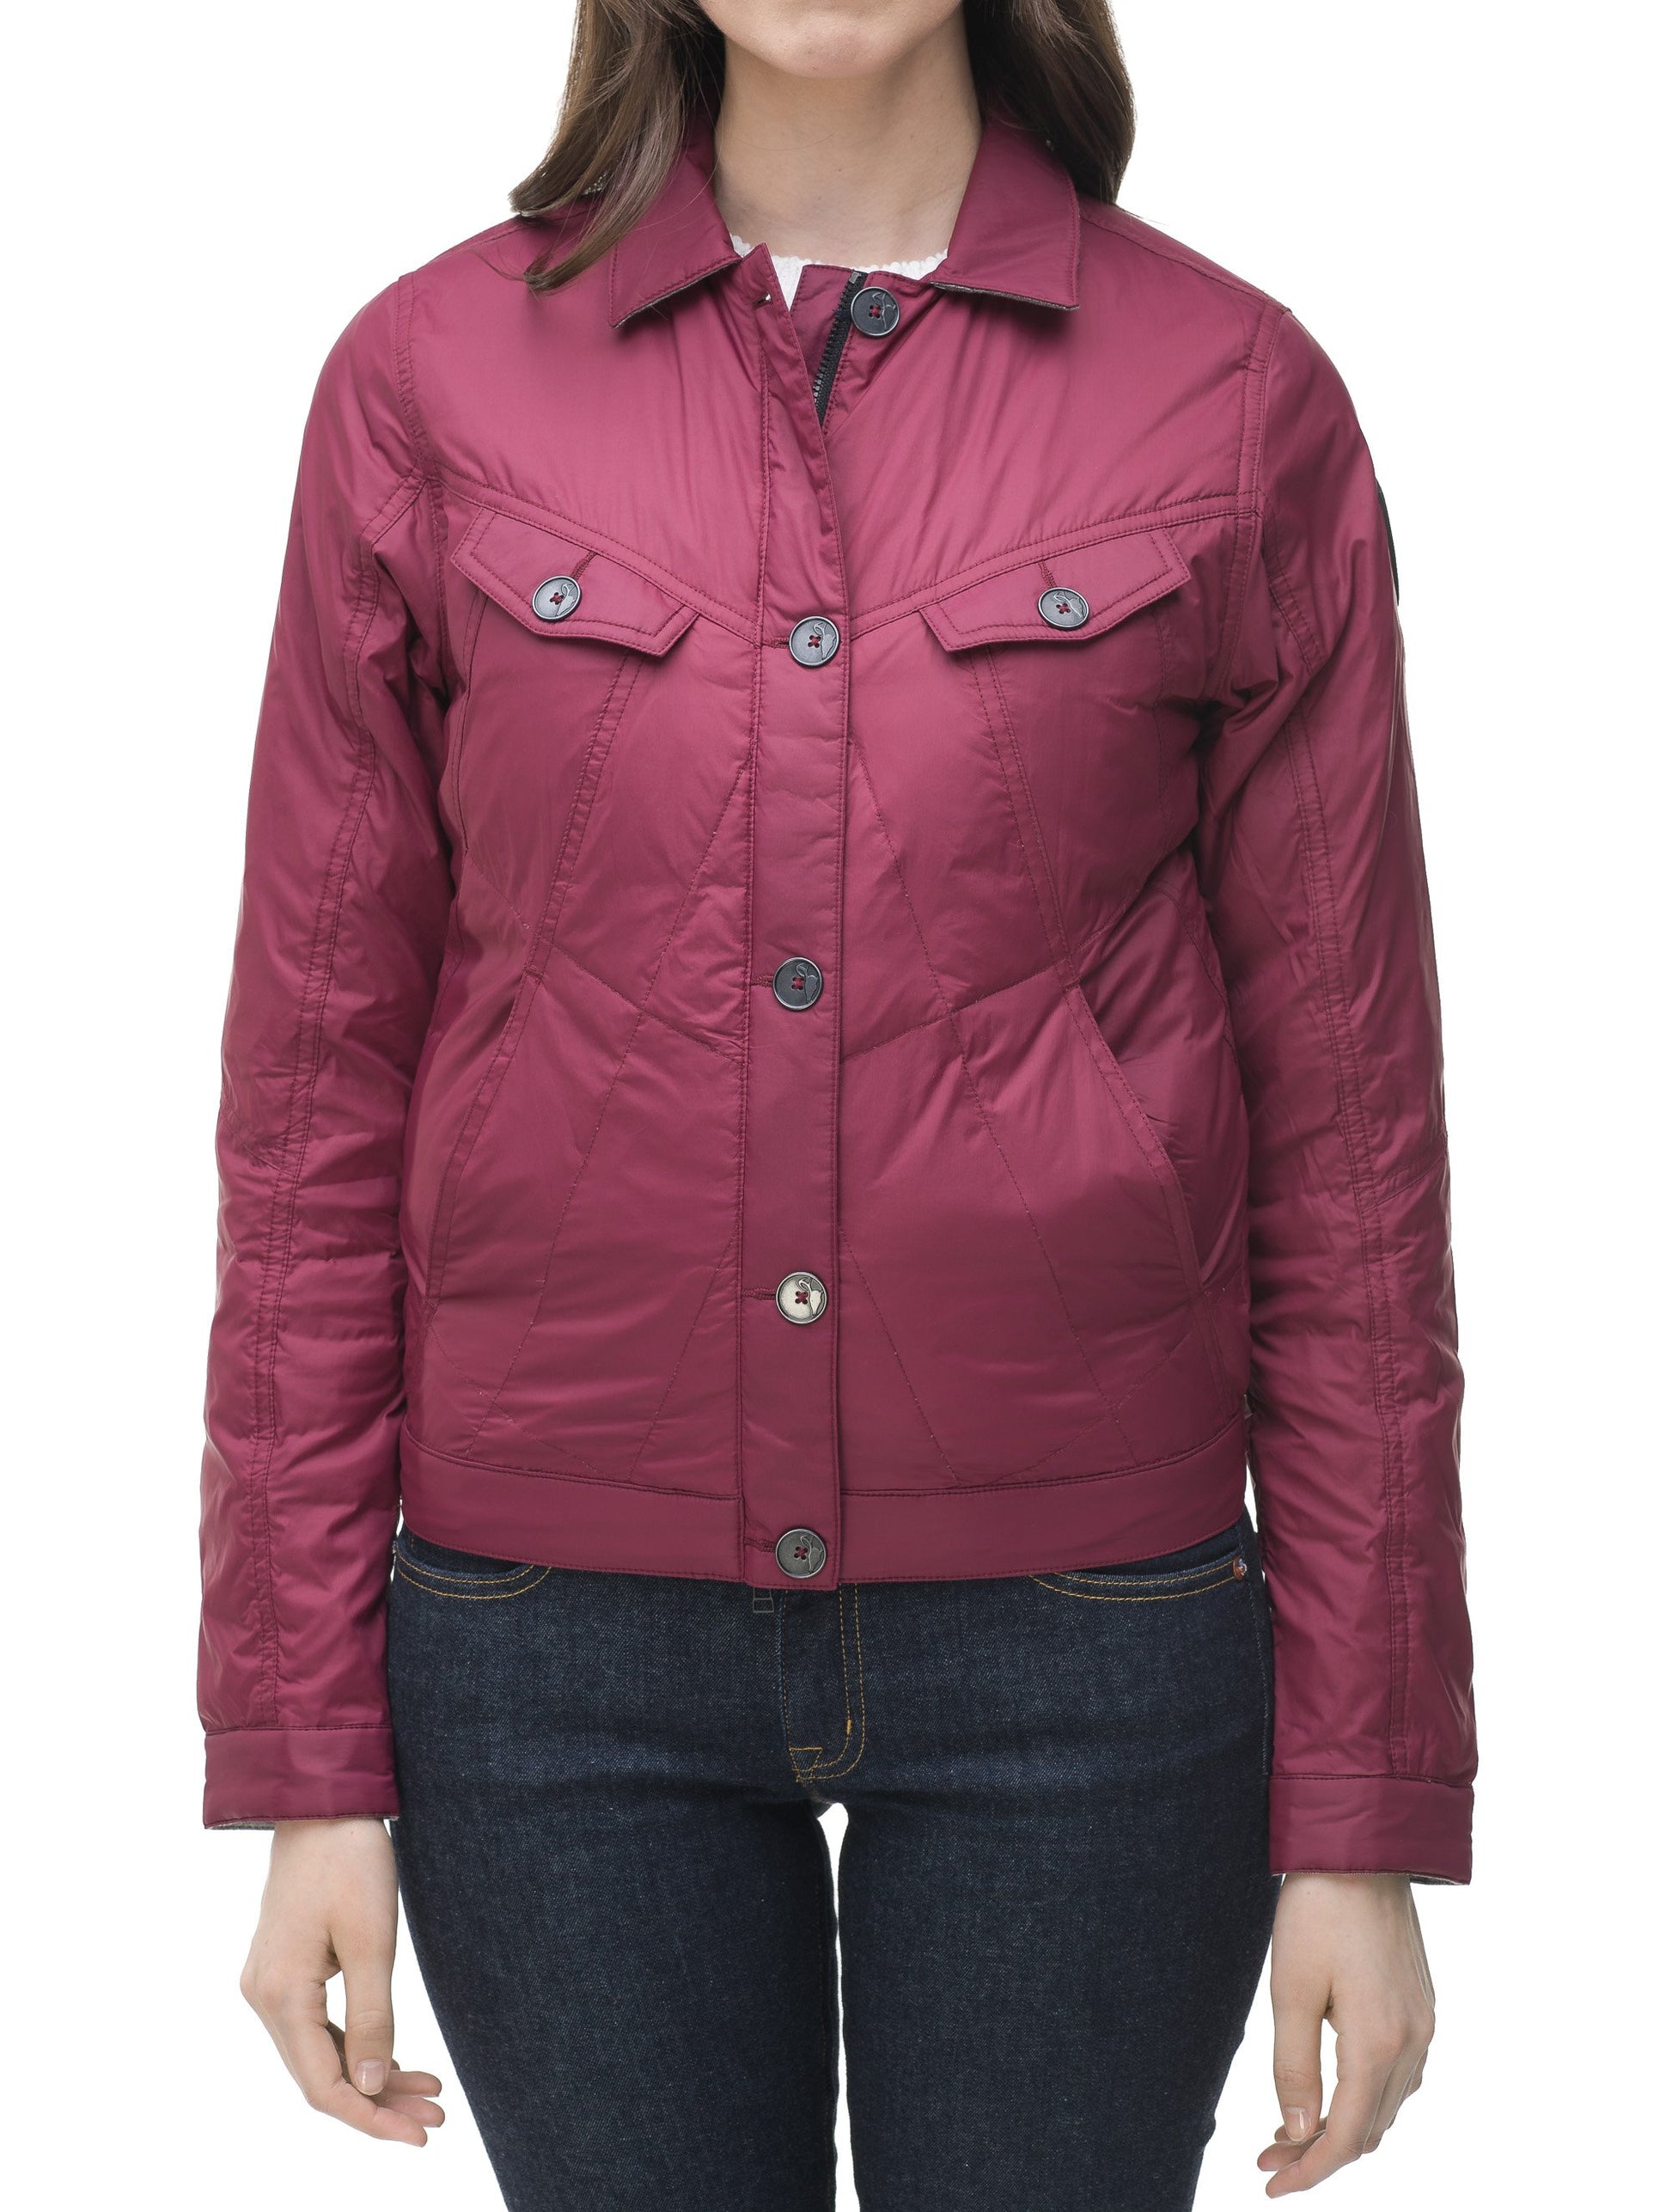 Lightweight cropped women's jacket in Berry